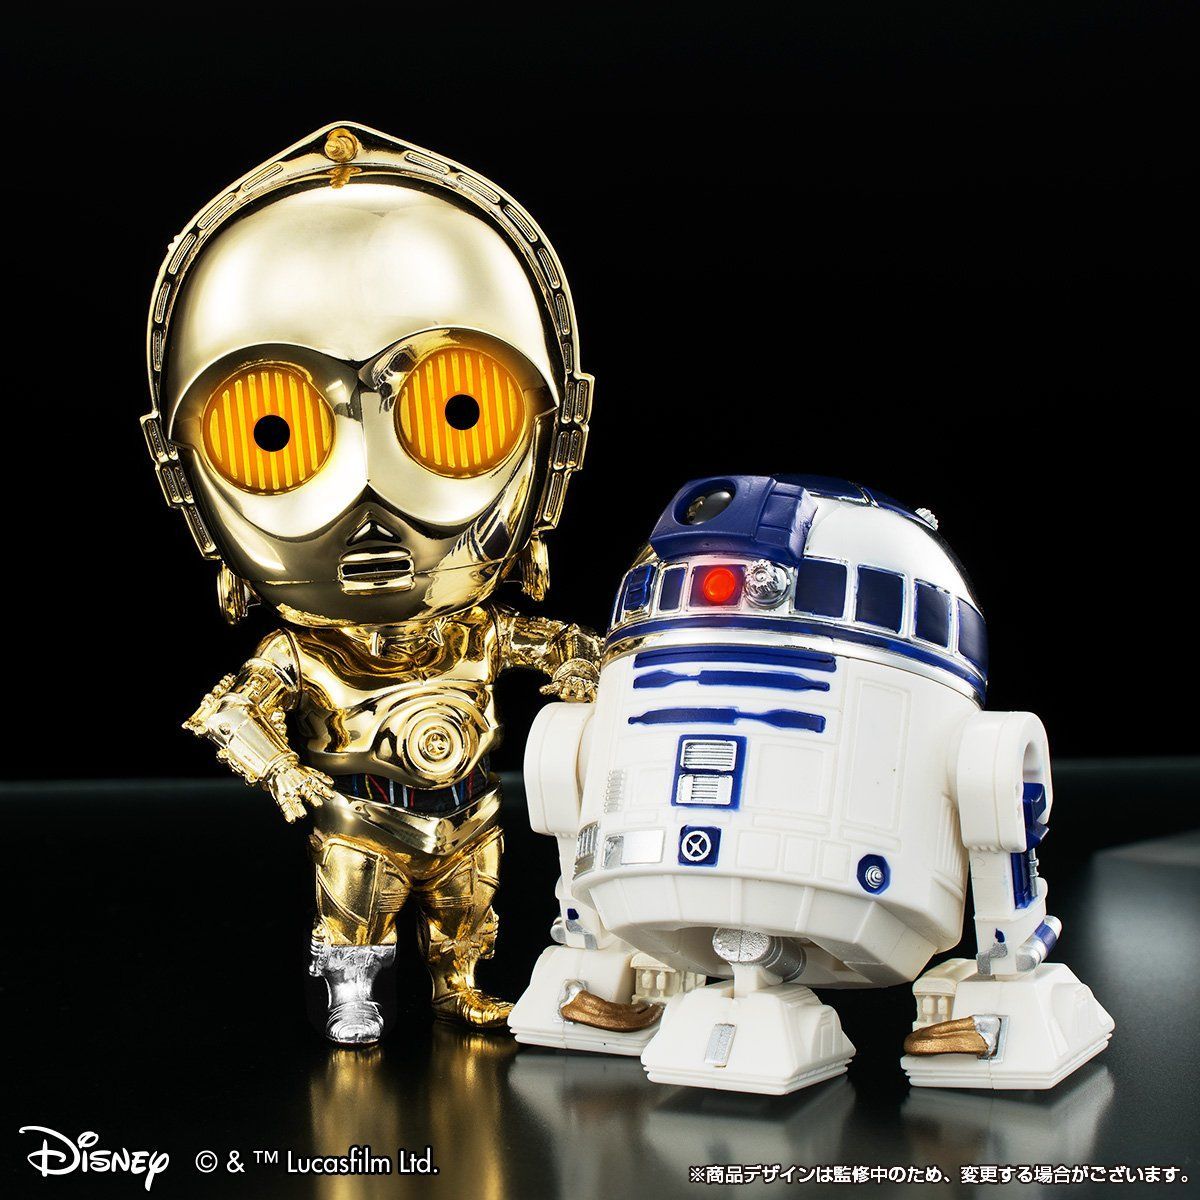 ☆超希少 ネガ☆ スターウォーズ R2-D2 C-3PO フィルム-